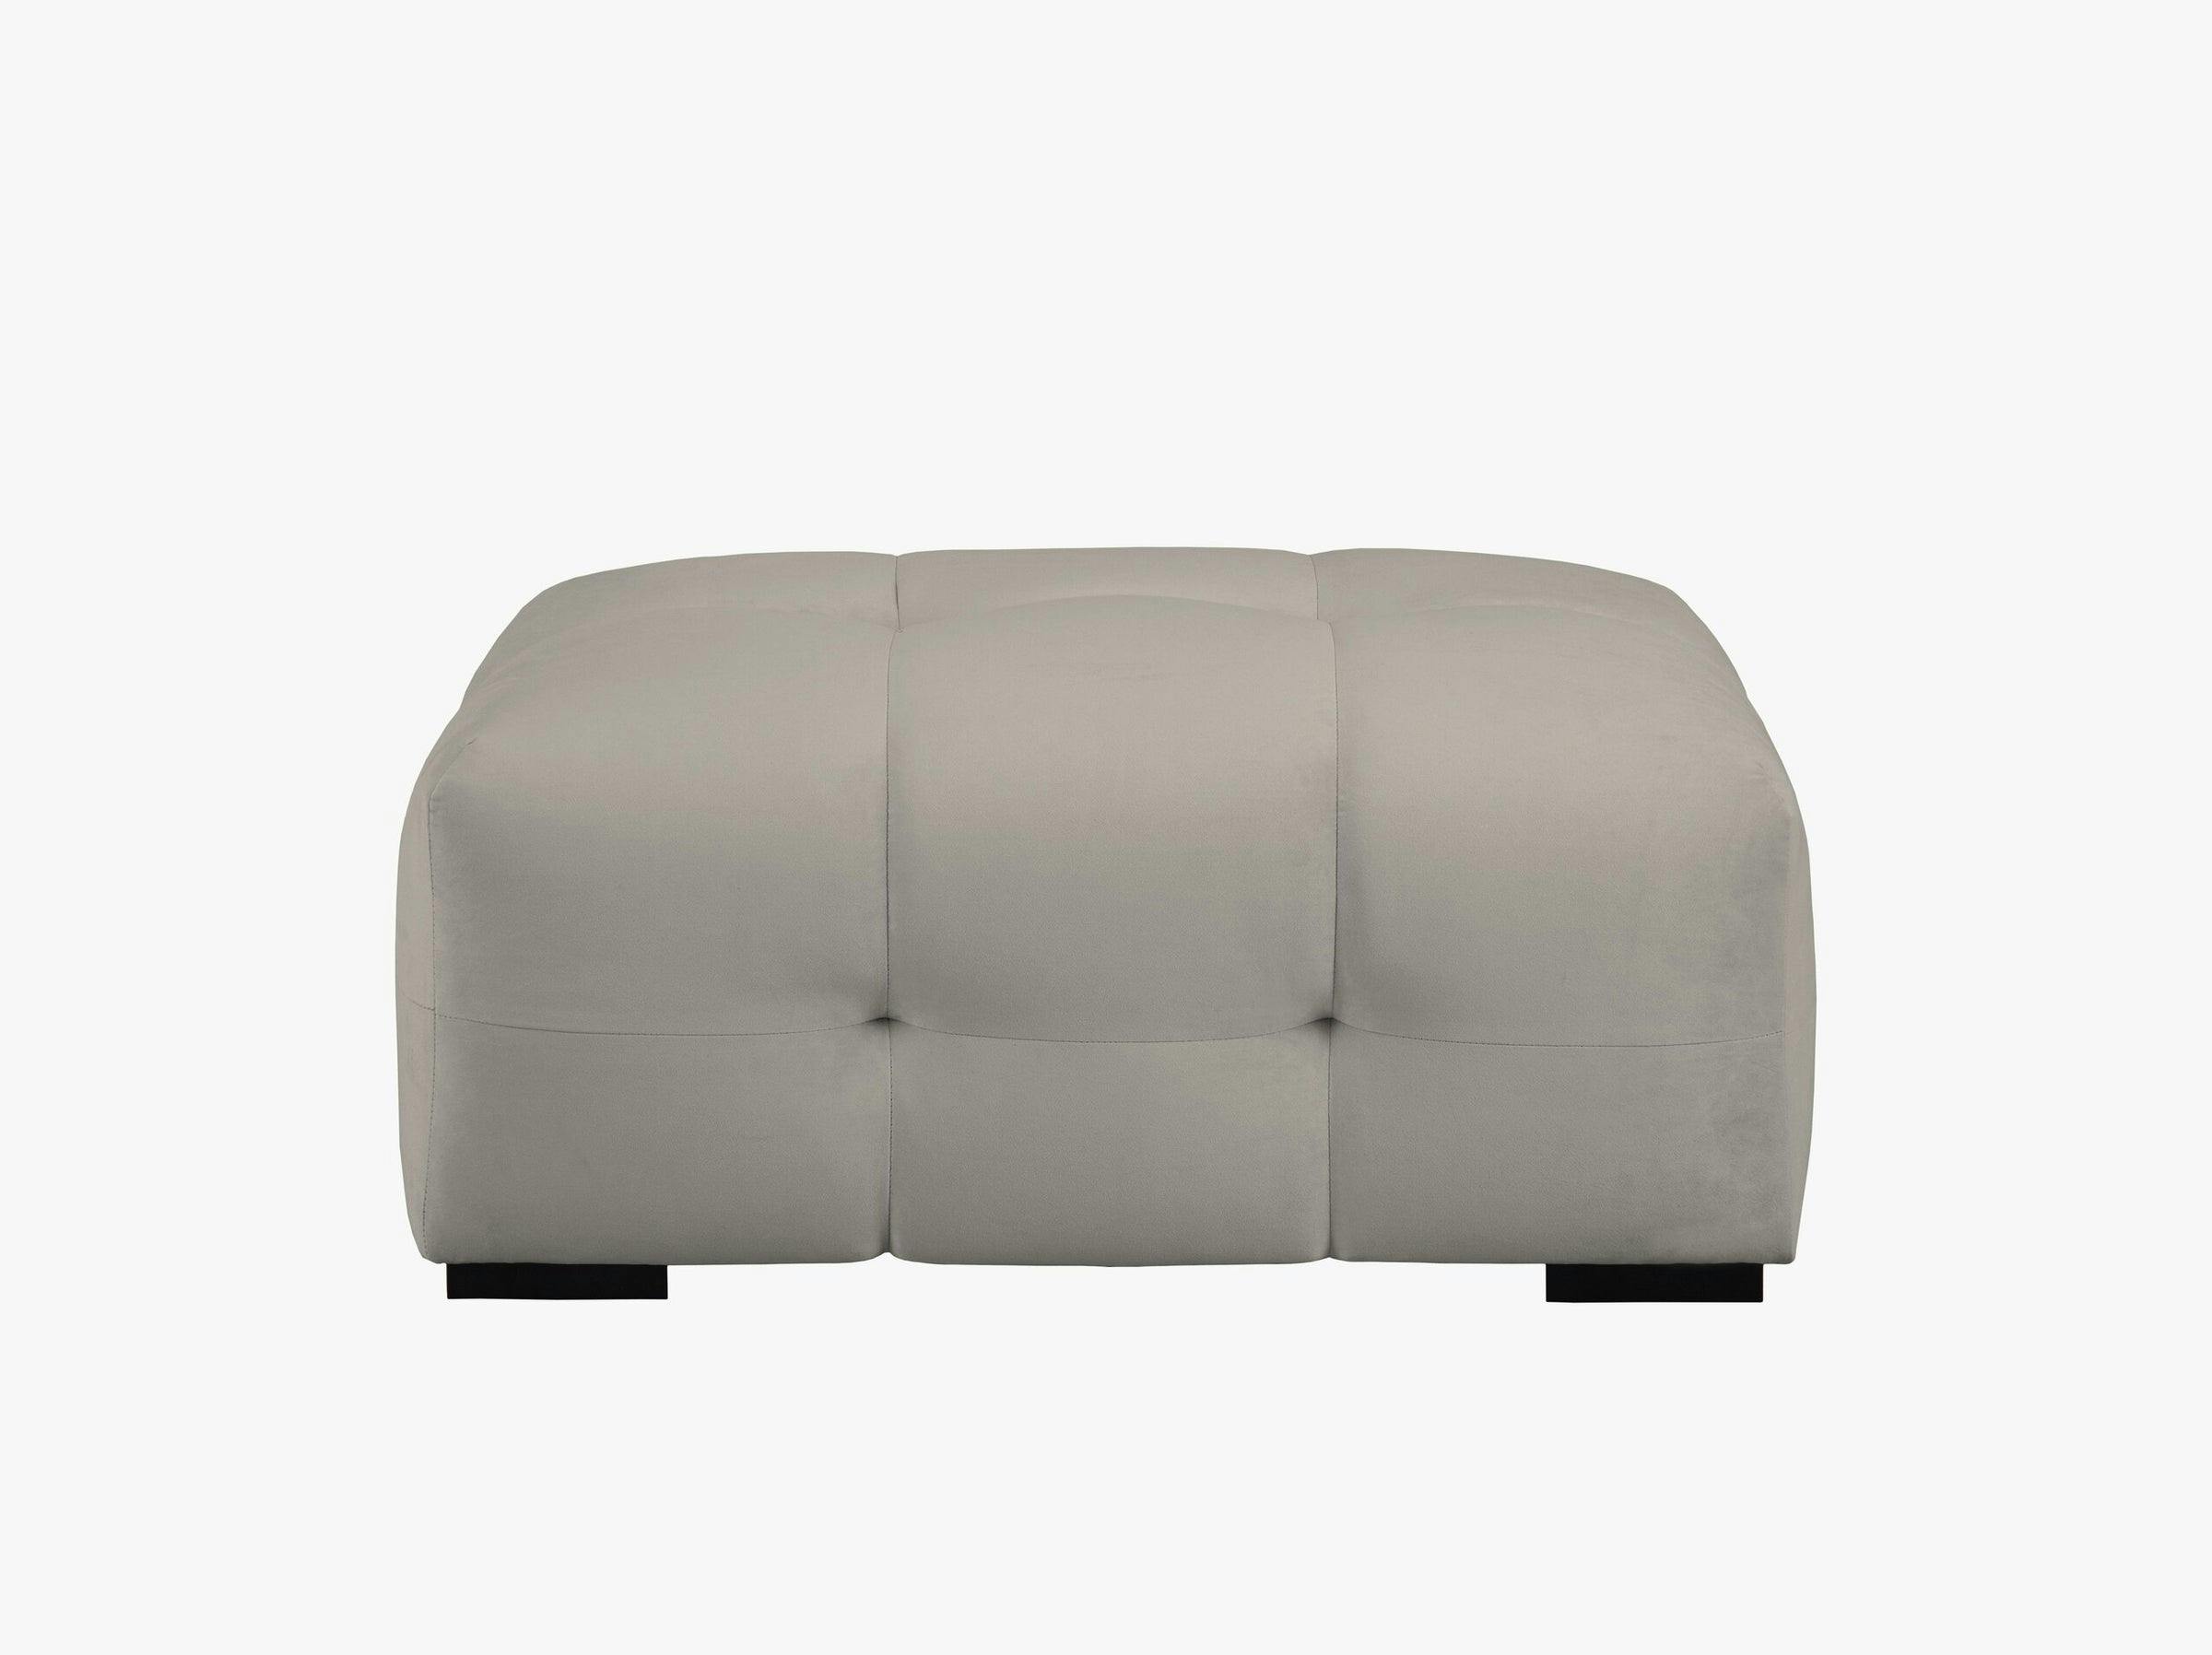 Kendal sofás terciopelo gris oscuro